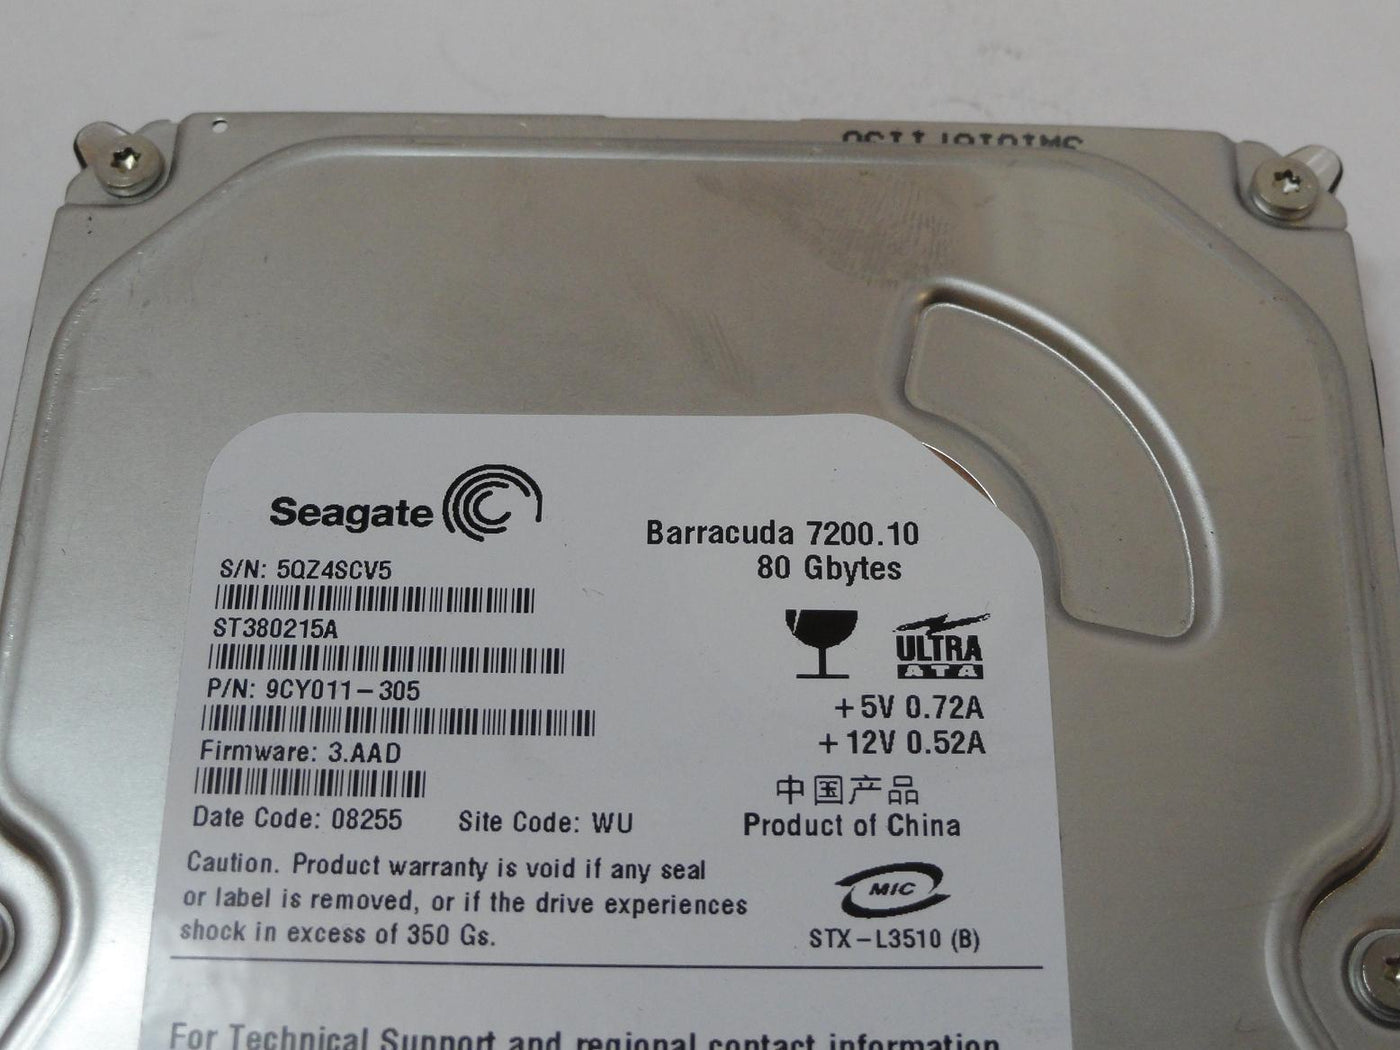 PR13205_9CY011-305_Seagate 80GB IDE 7200rpm 3.5in HDD - Image3